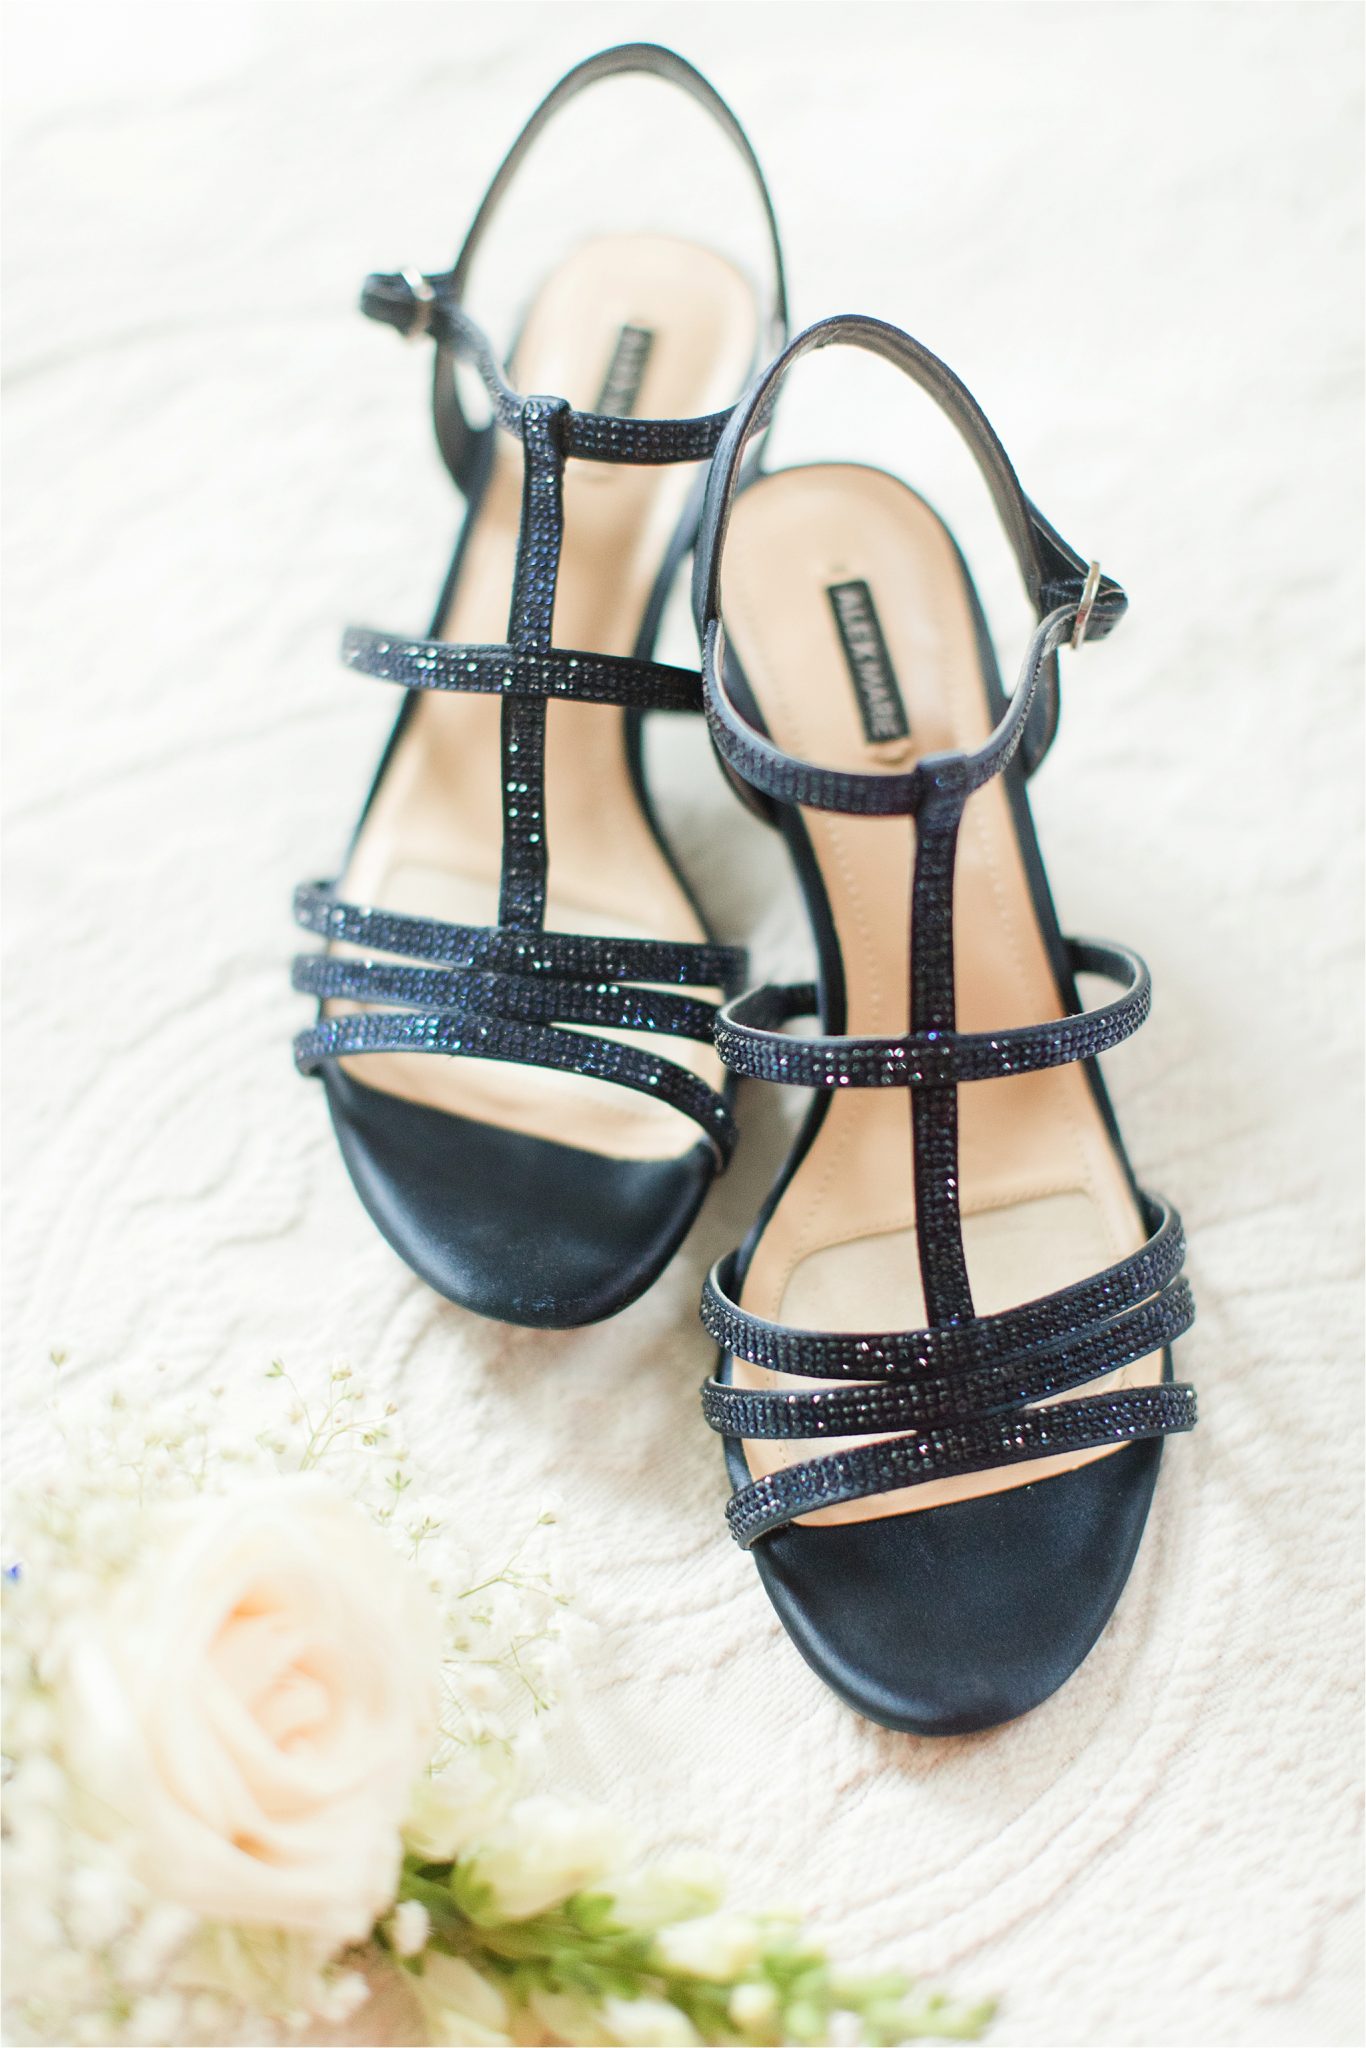 navy wedding shoes-rhinestone wedding shoes-strappy wedding shoes-summer wedding shoes